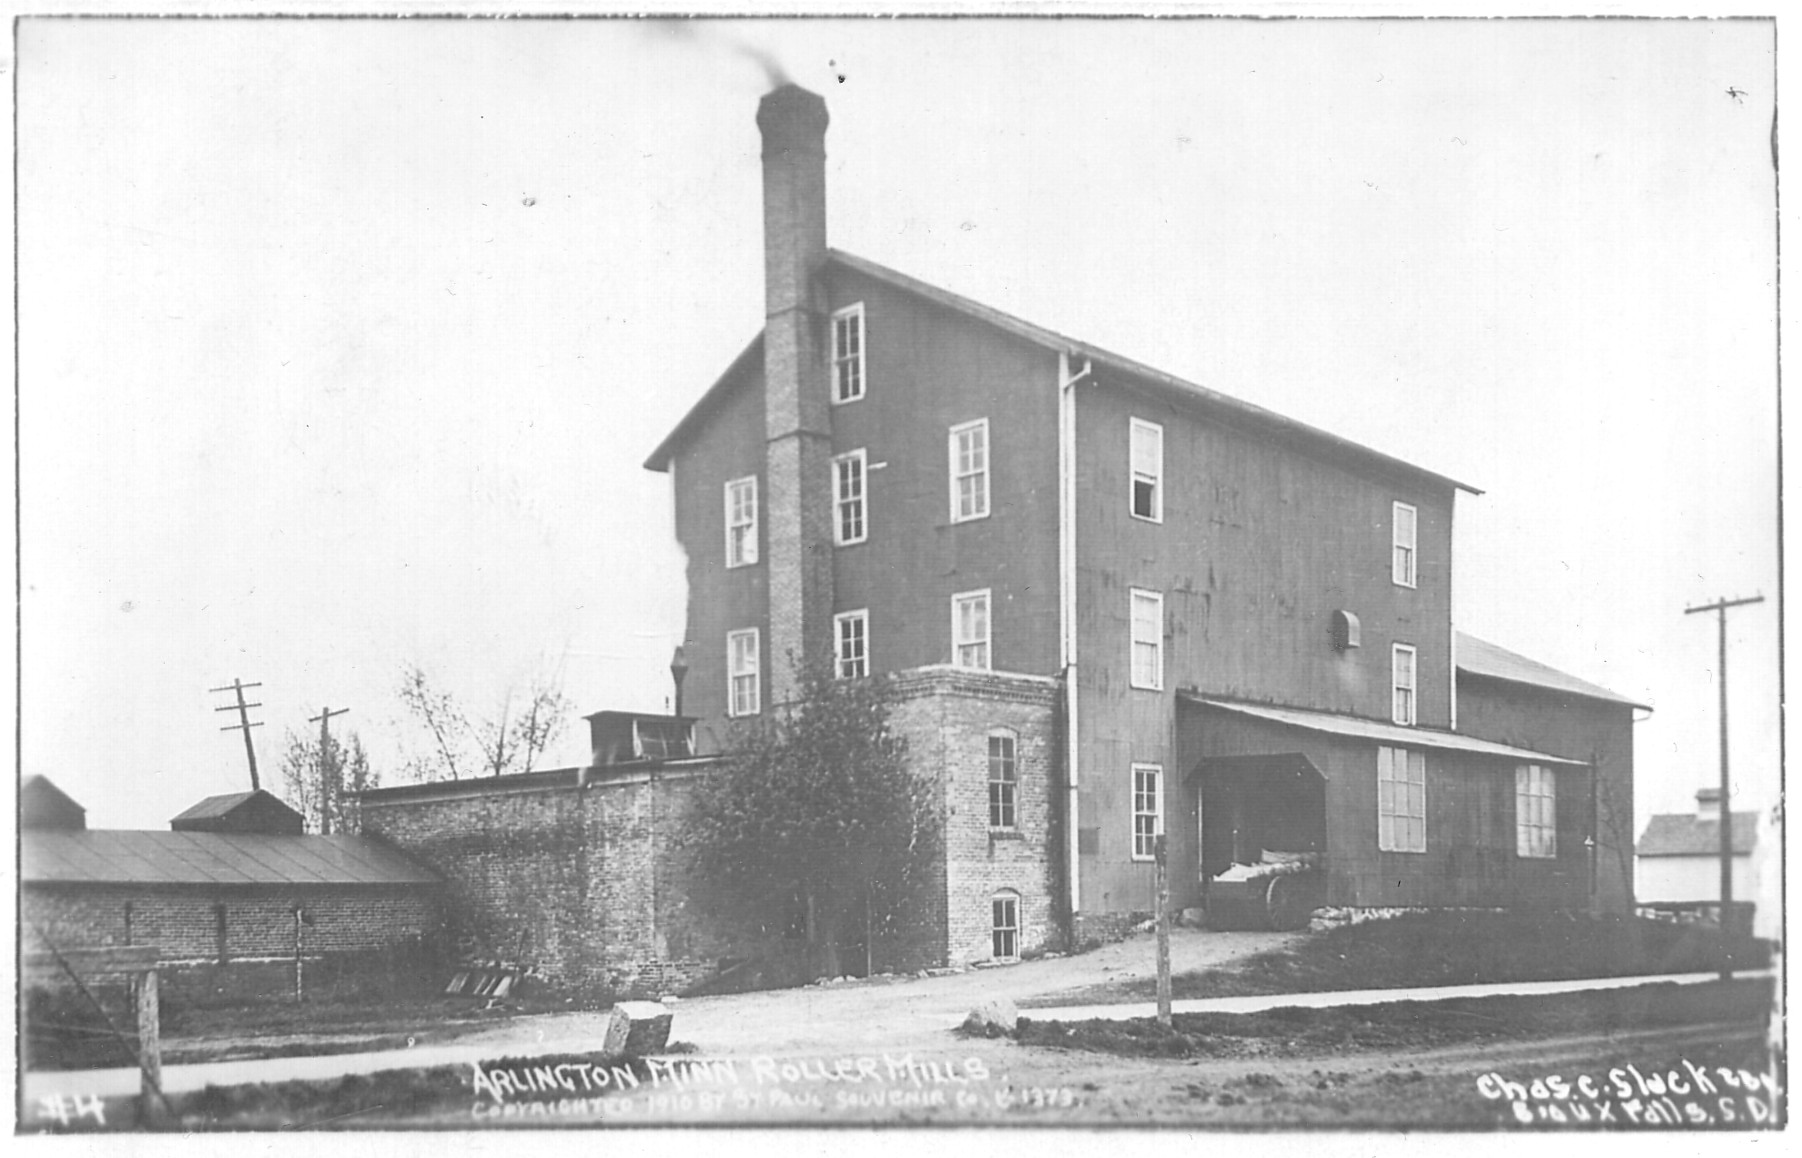 Mill 1910